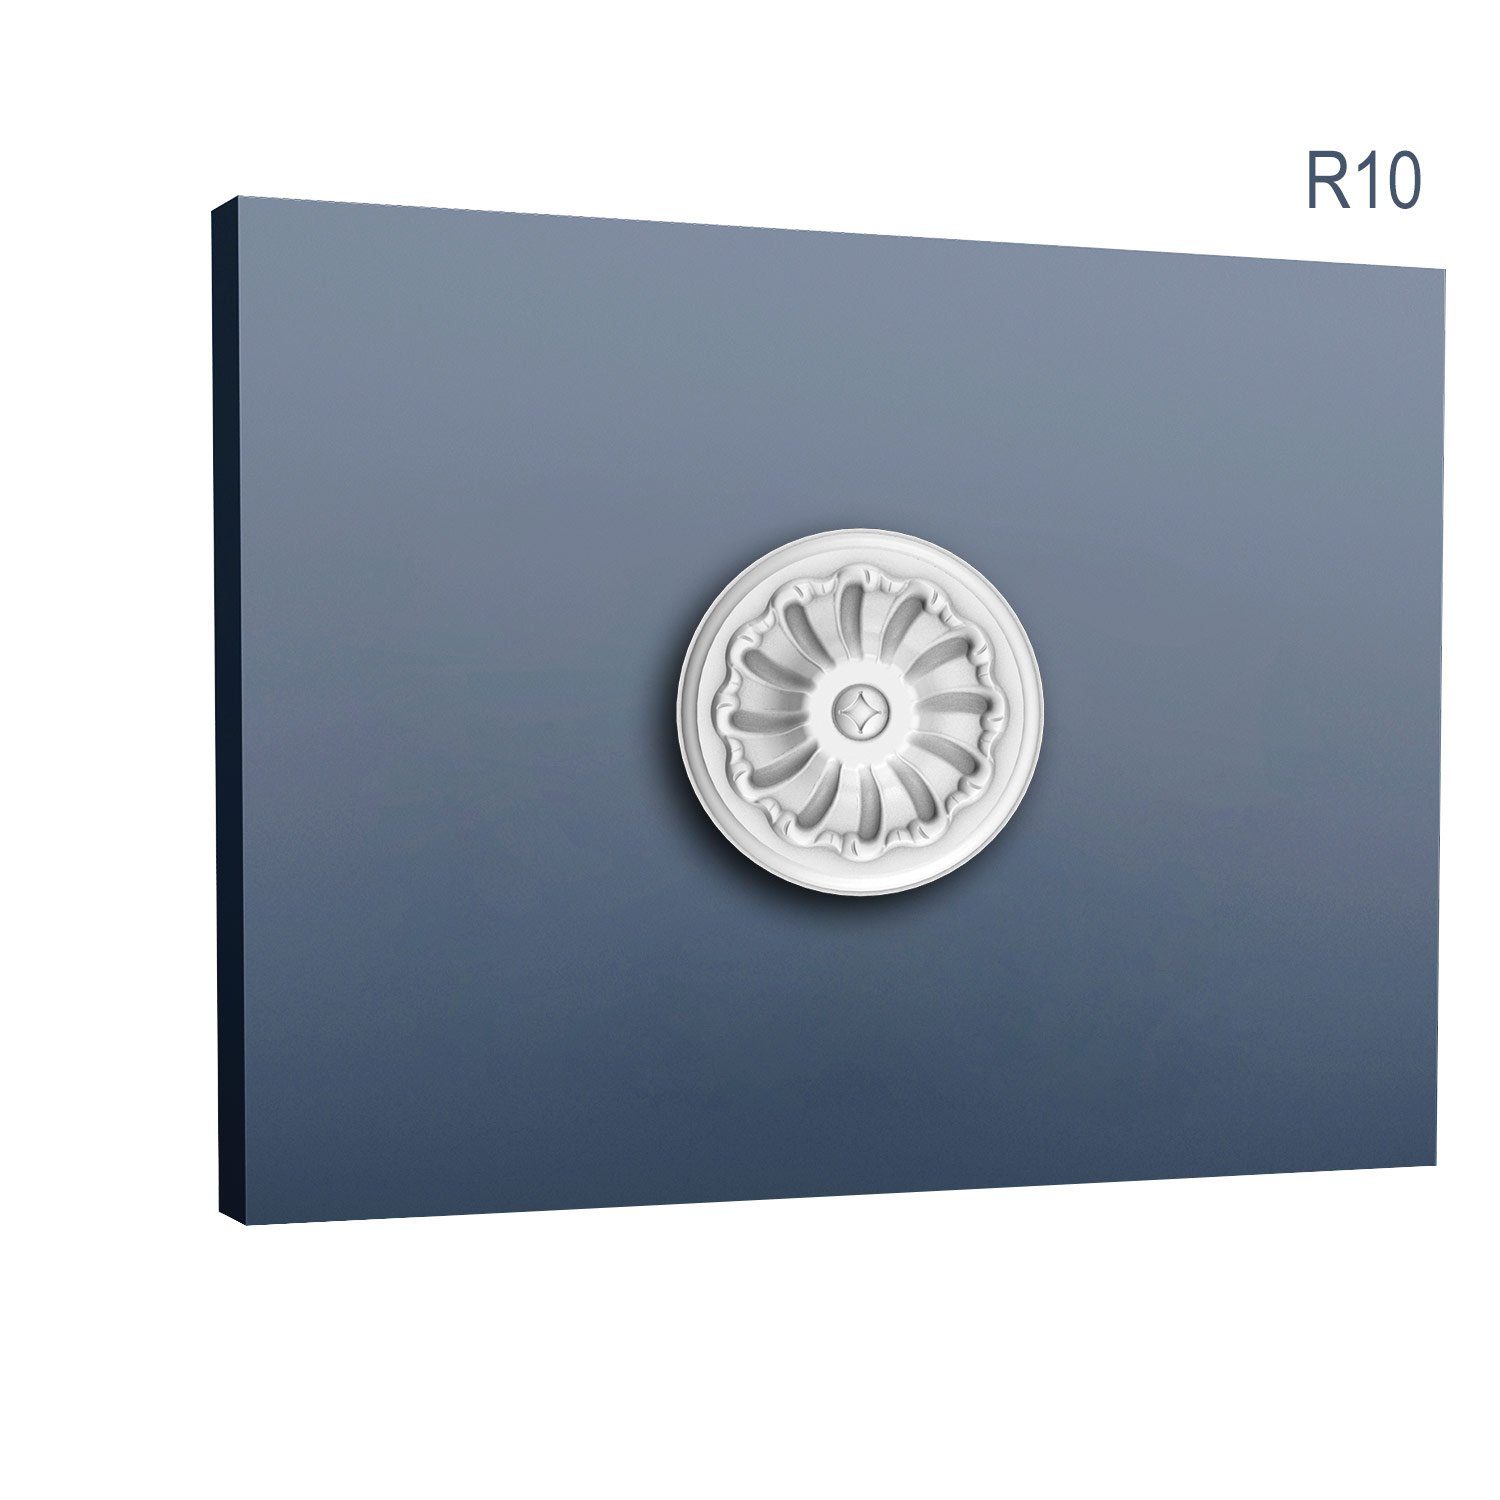 Orac Decor Decken-Rosette R10 (Rosette, 1 St., Deckenrosette, Medallion, Stuckrosette, Deckenelement, Zierelement, Durchmesser 15 cm), weiß, vorgrundiert, Stil: Neo-Renaissance